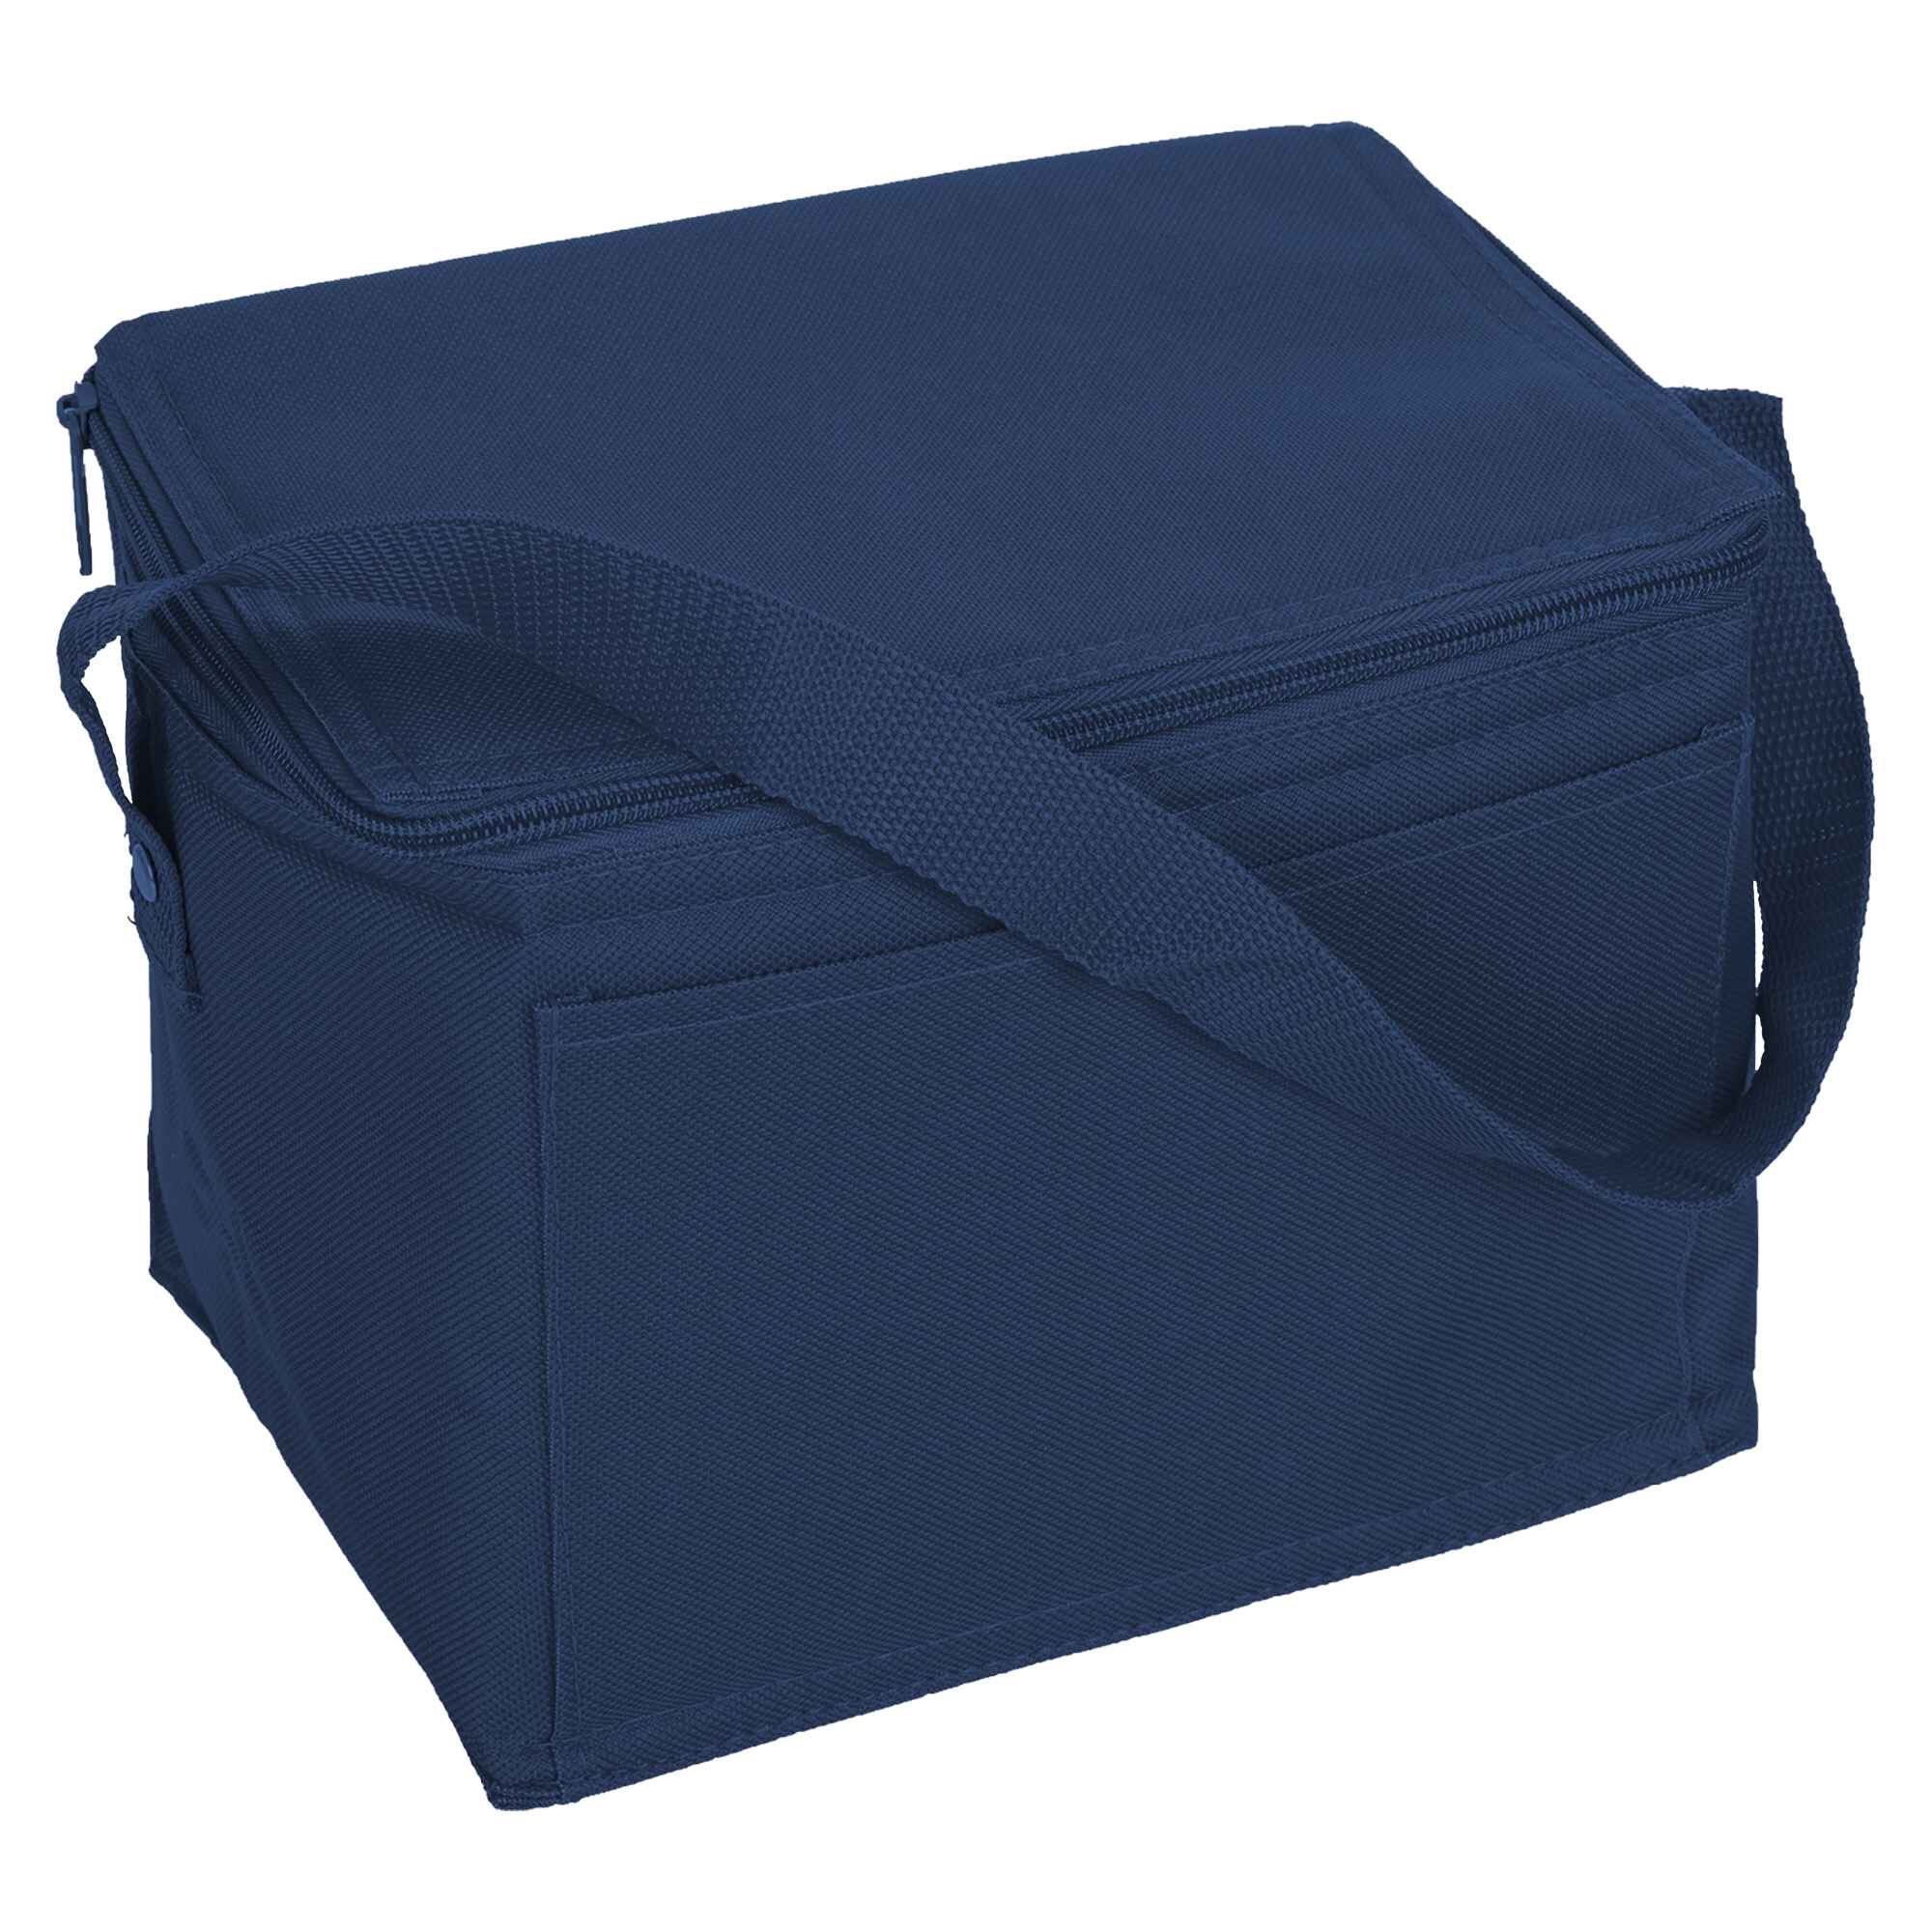 Custom (Navy Blue) Nylon Cooler Bag Online Perth Australia